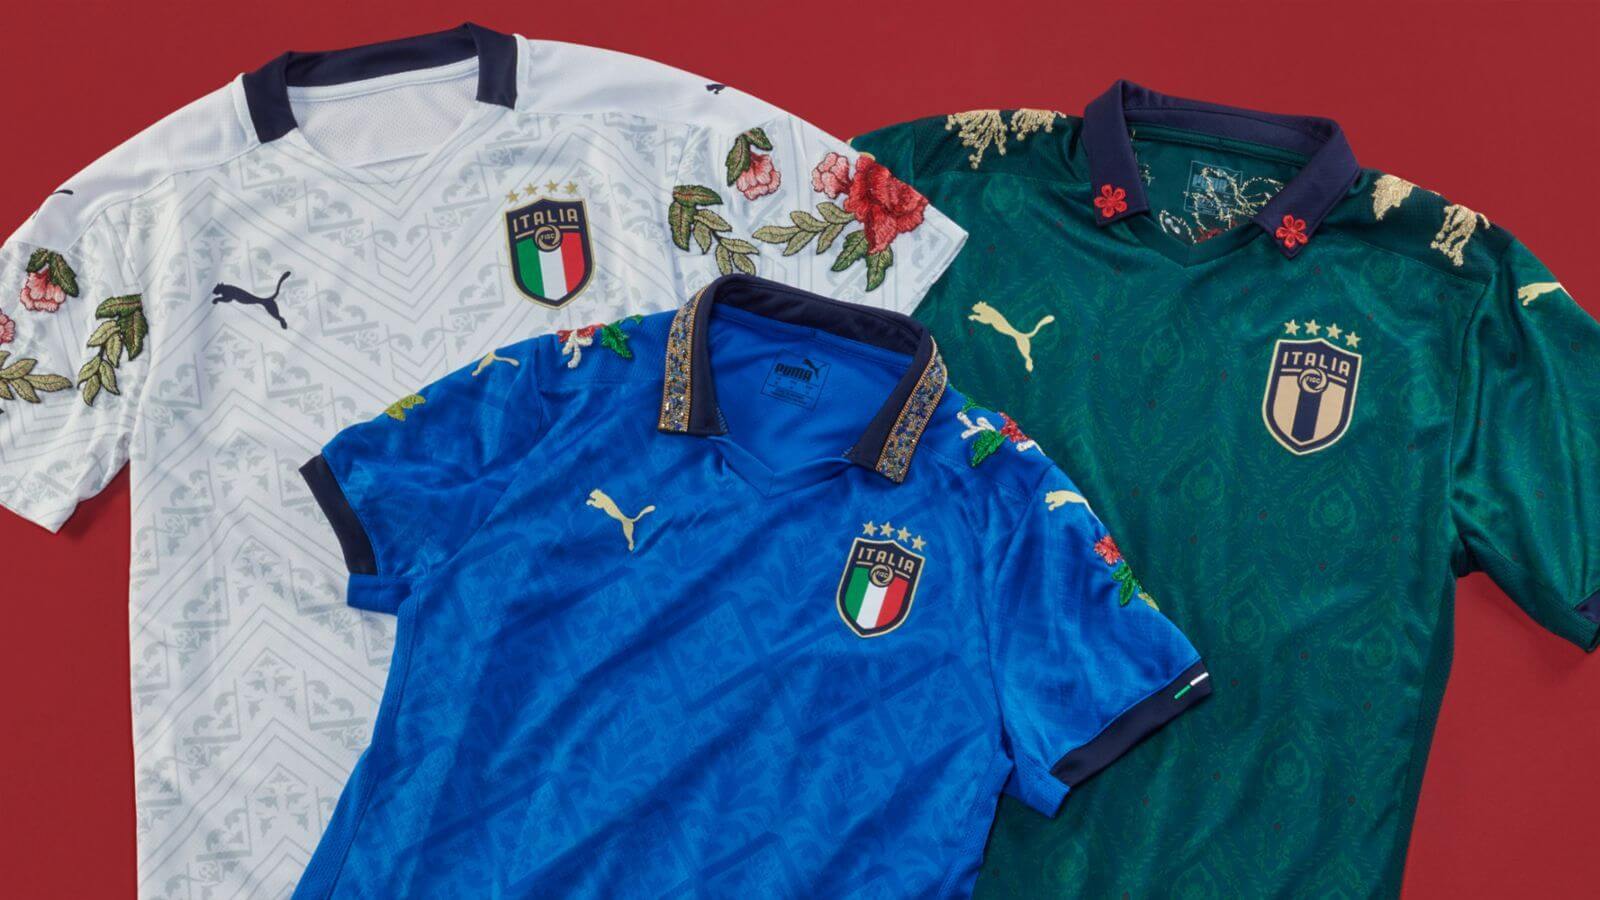 Italy 2021 jersey